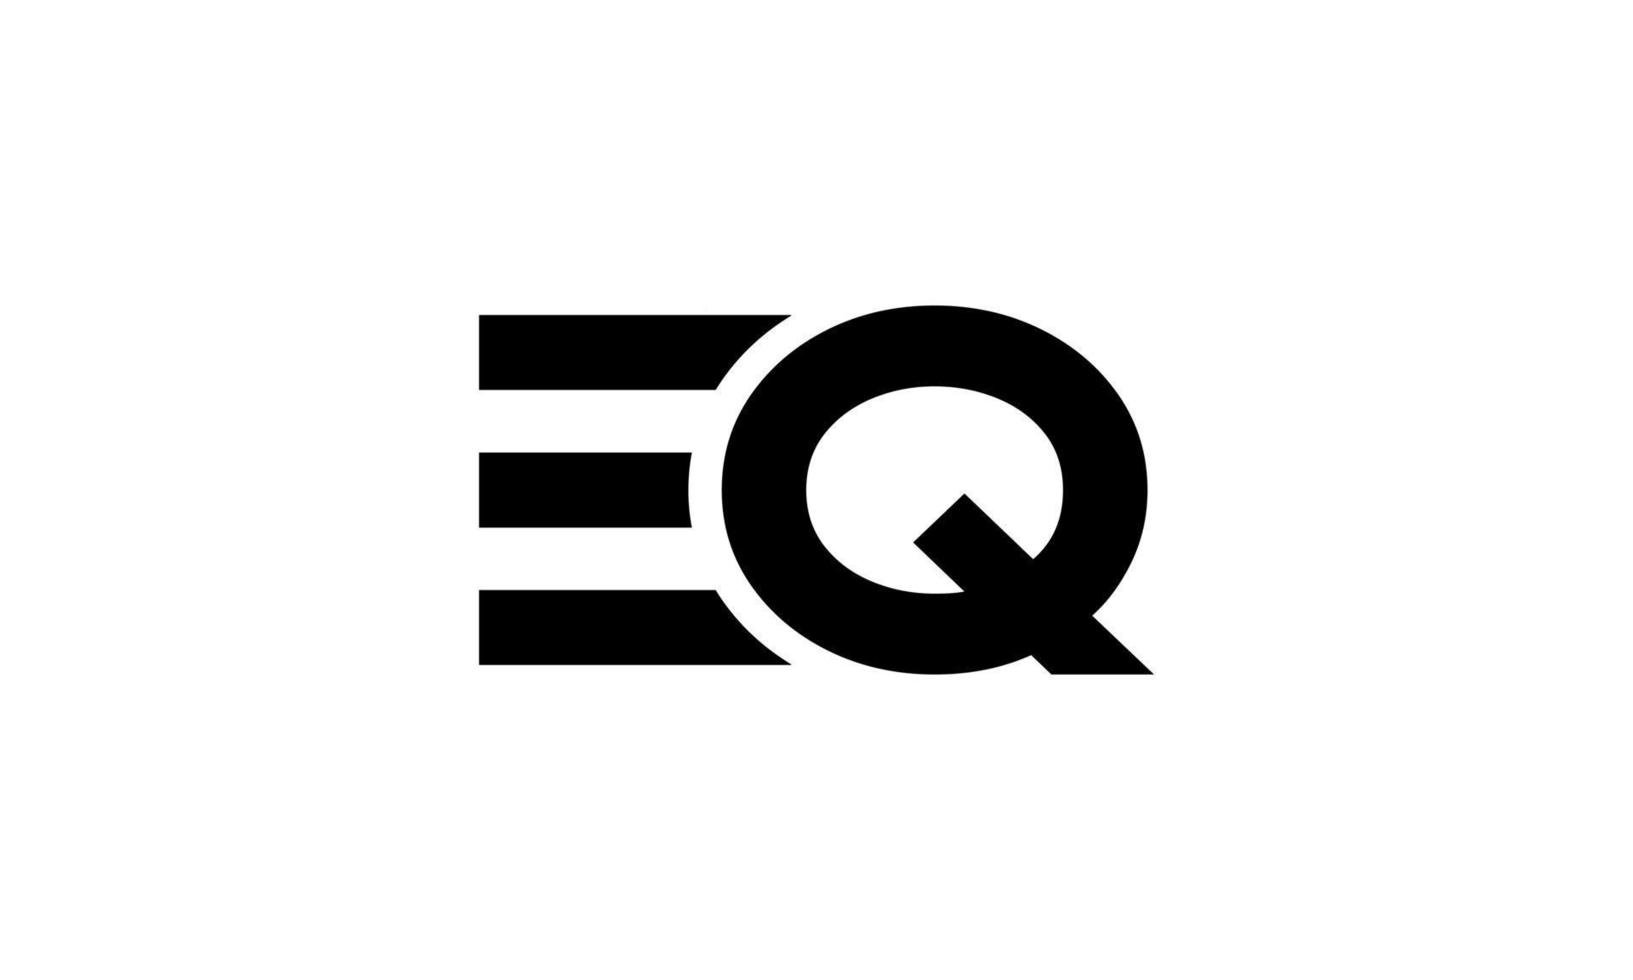 Buchstabe eq Logo pro Vektordatei pro Vektor